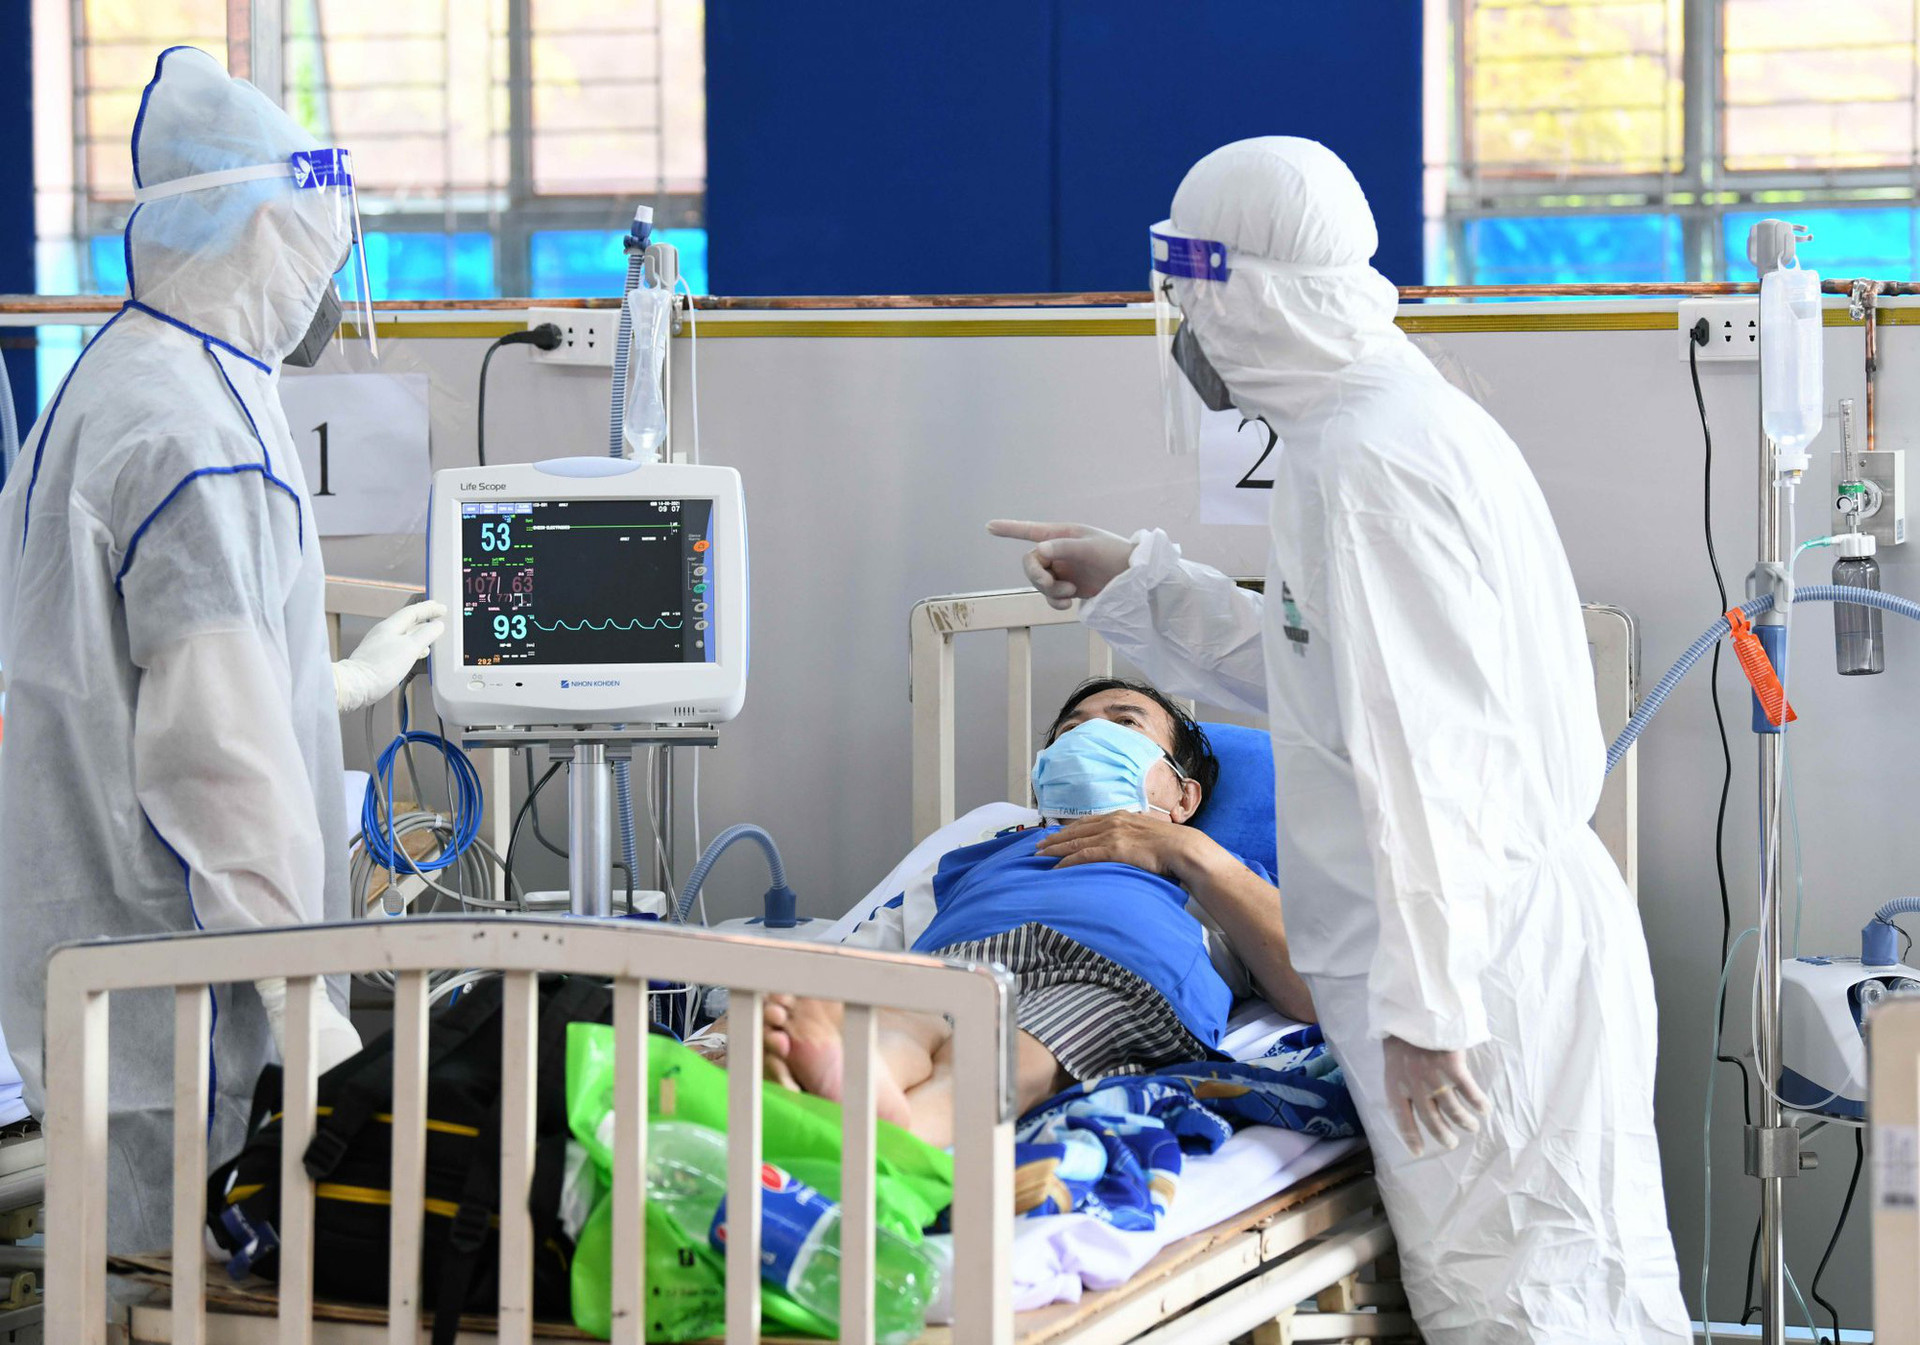 Chi phí điều trị bệnh ở Việt Nam thấp hơn thế giới 3 - 4 lần. (Ảnh minh hoạ)